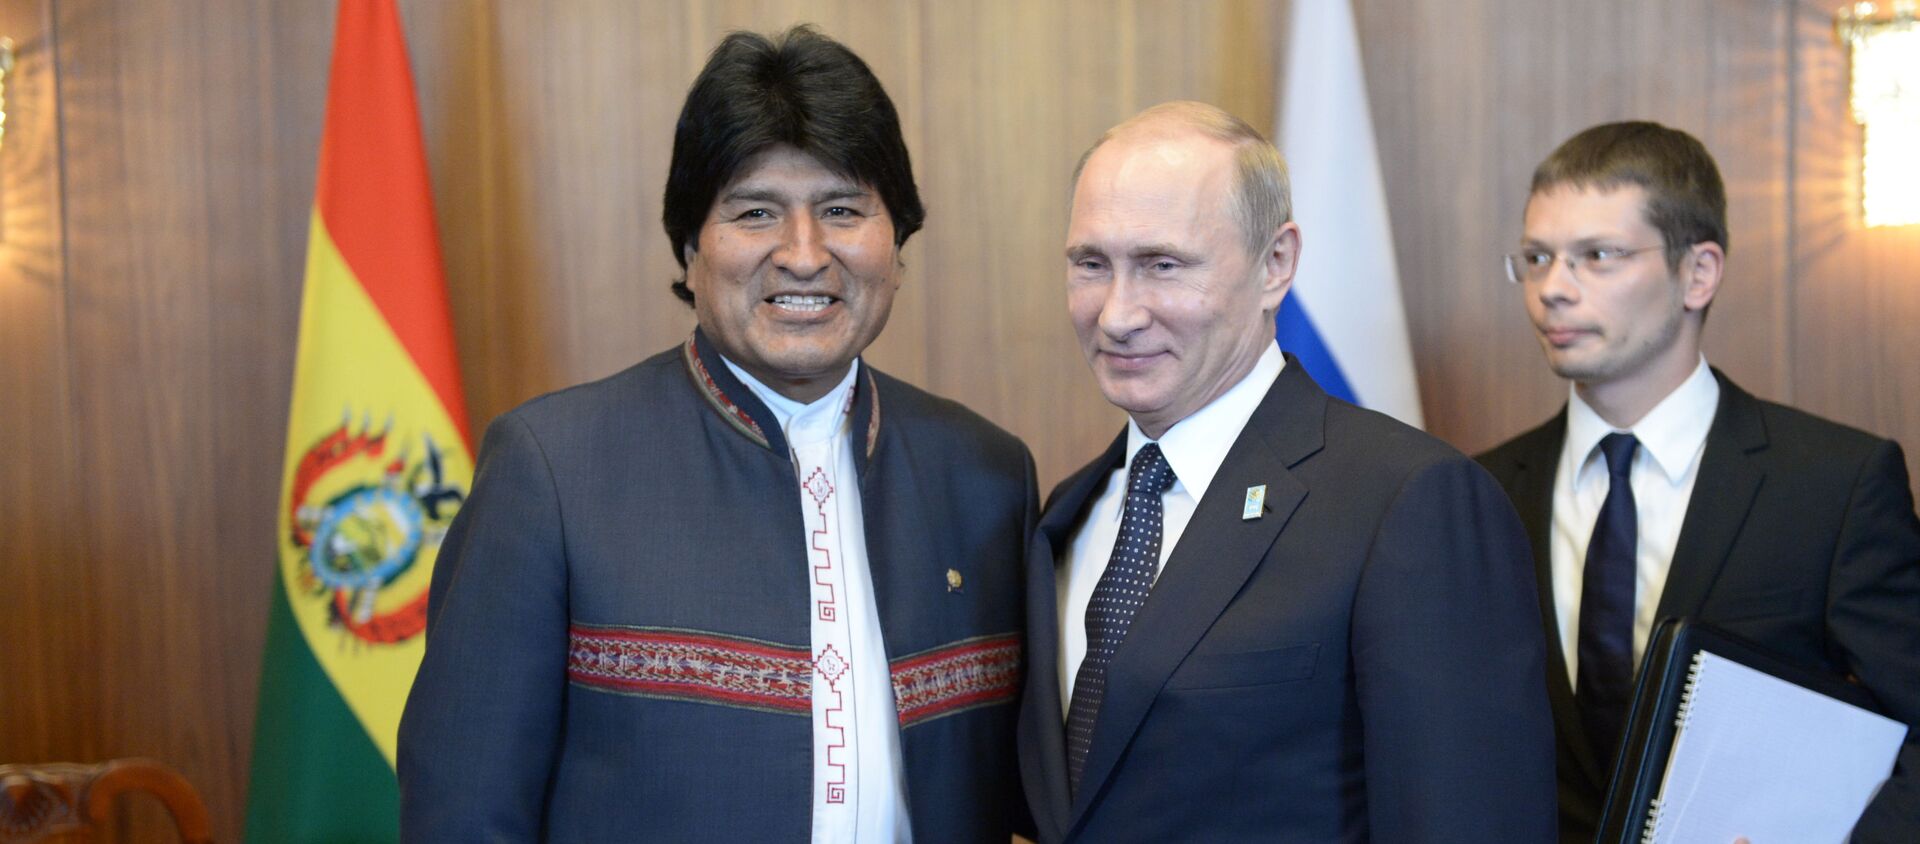 El presidente boliviano, Evo Morales y el presidente ruso, Vladímir Putin (archivo) - Sputnik Mundo, 1920, 10.07.2019